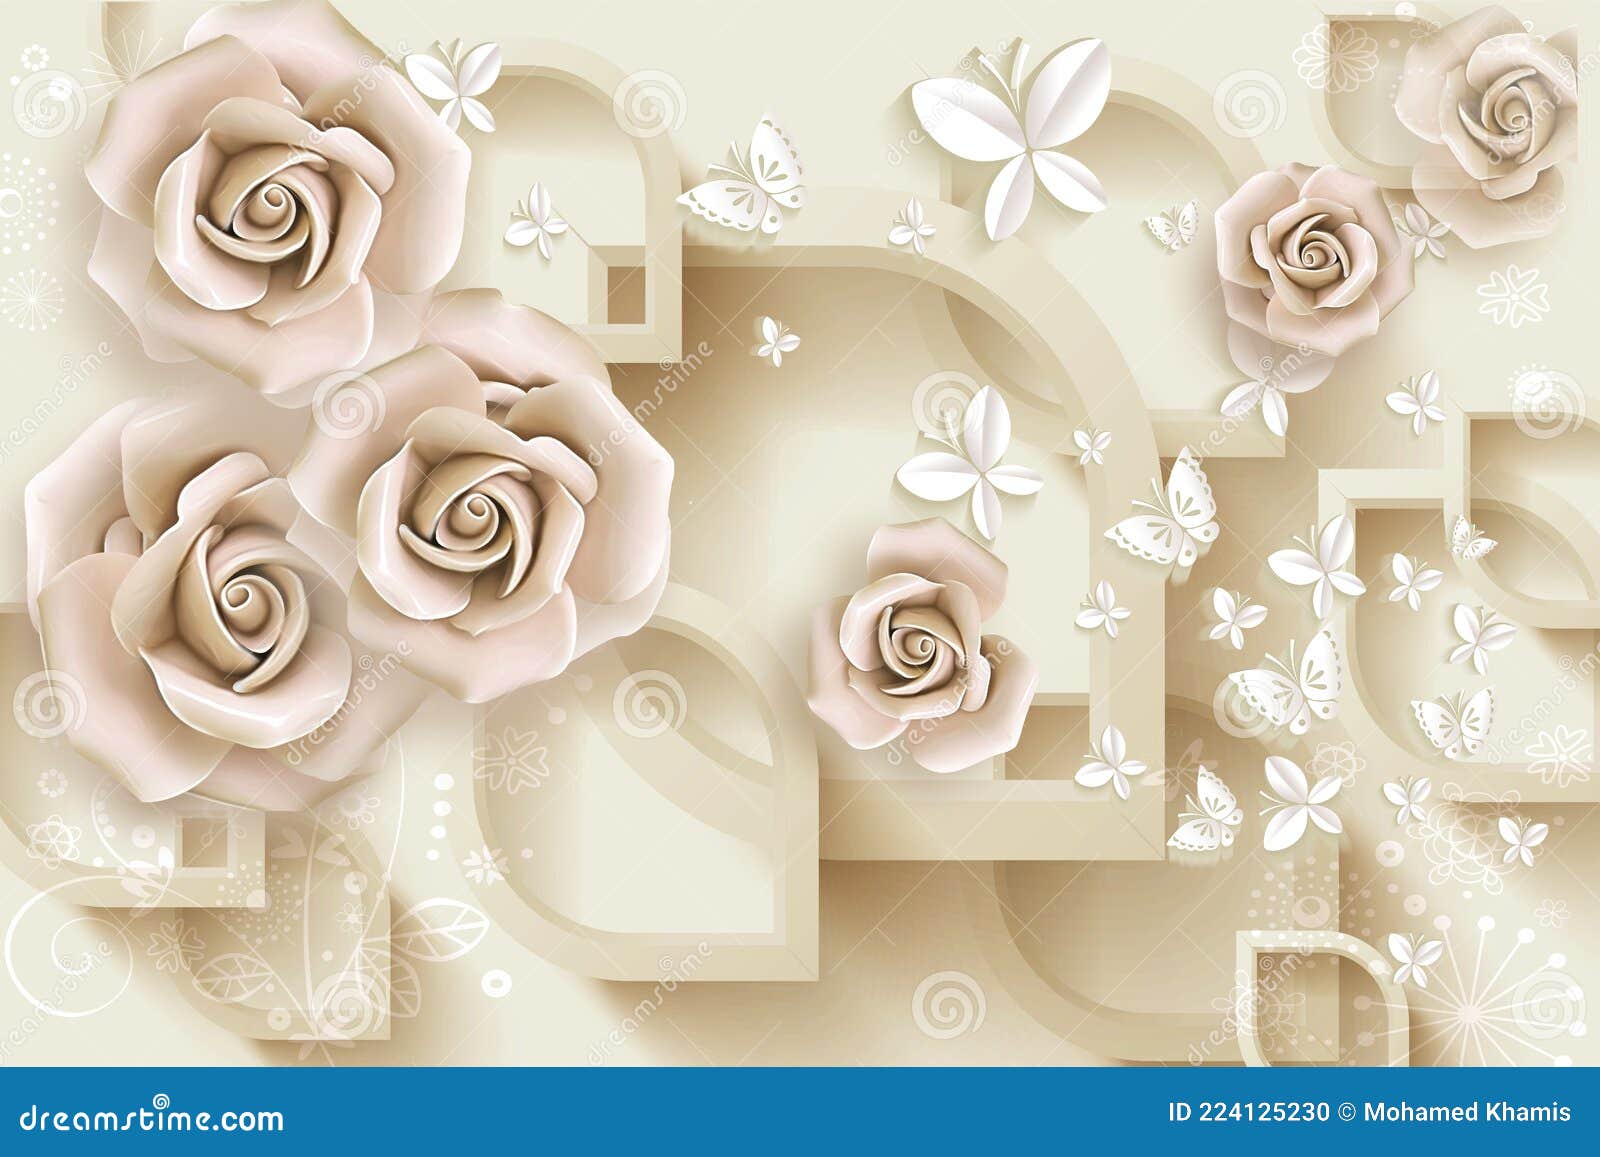 Đang tìm kiếm một bộ hình nền đầy màu sắc và độc đáo cho thiết bị của bạn? Bộ hình nền hoa và bướm hồng trên nền 3D trắng sẽ mang tới cho bạn một thế giới đầy màu sắc của những bông hoa duyên dáng đang nở rộ trên nền trắng tinh khôi. Bộ hình nền này sẽ khiến bạn cảm thấy thật thư giãn và yêu cuộc sống hơn bao giờ hết.